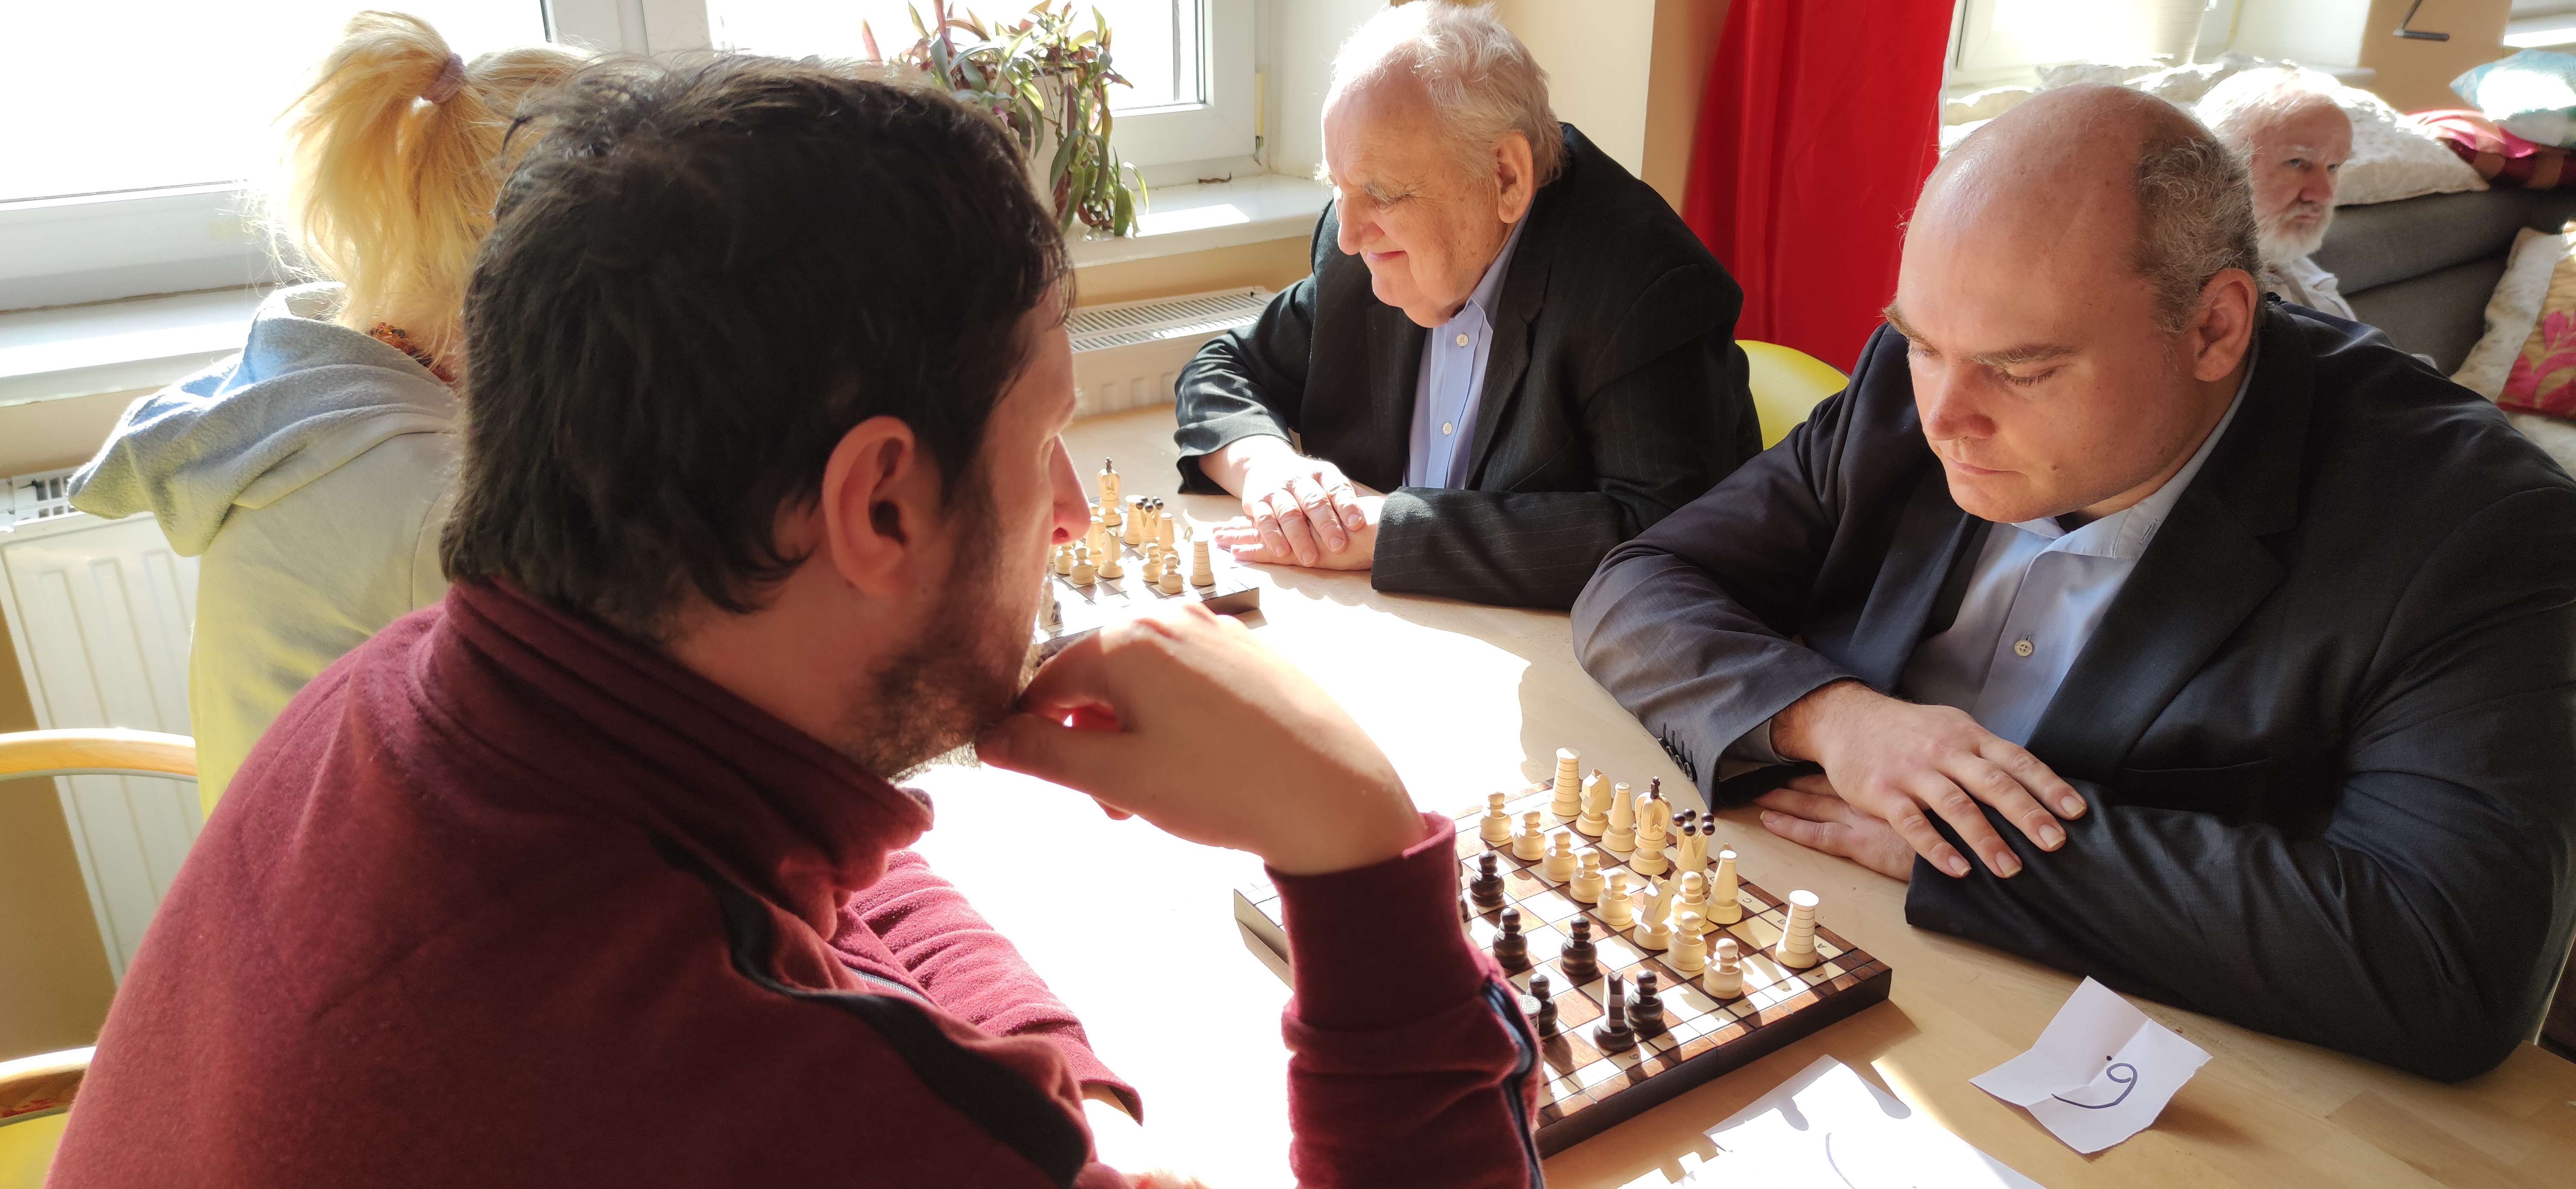 Trzech mężczyzn siedzi przy szachach.